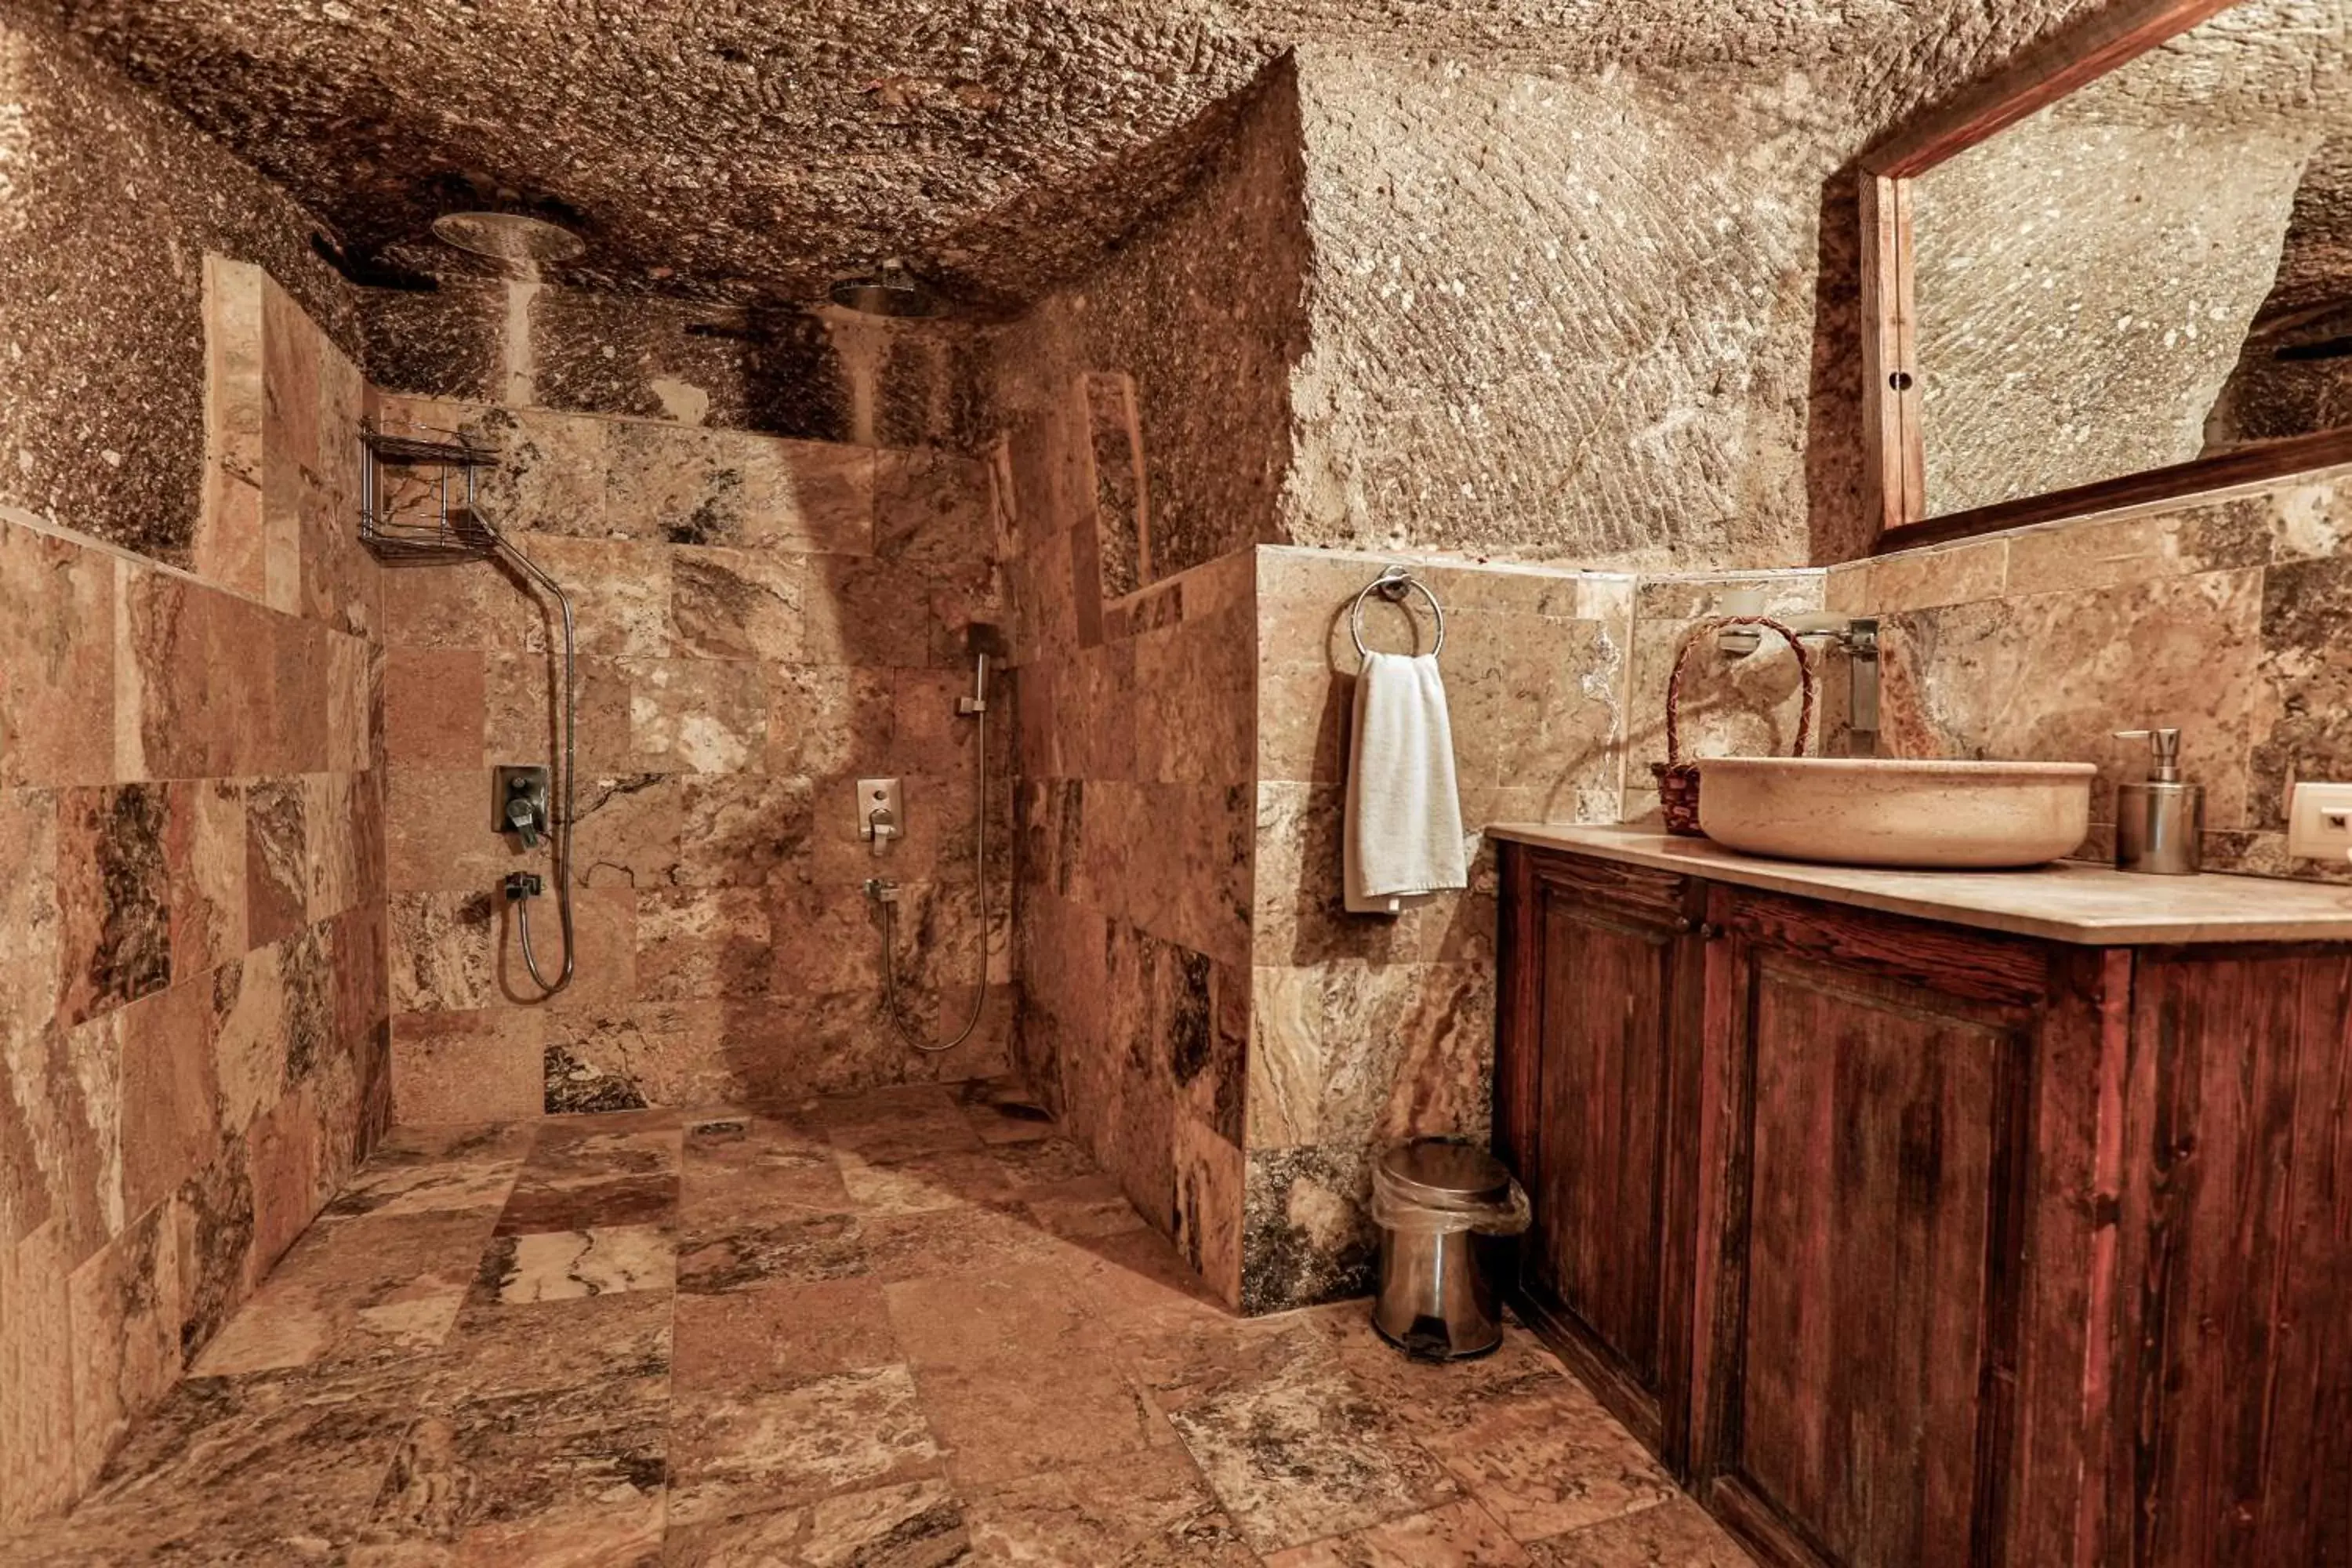 Toilet, Bathroom in Hidden Cave Hotel